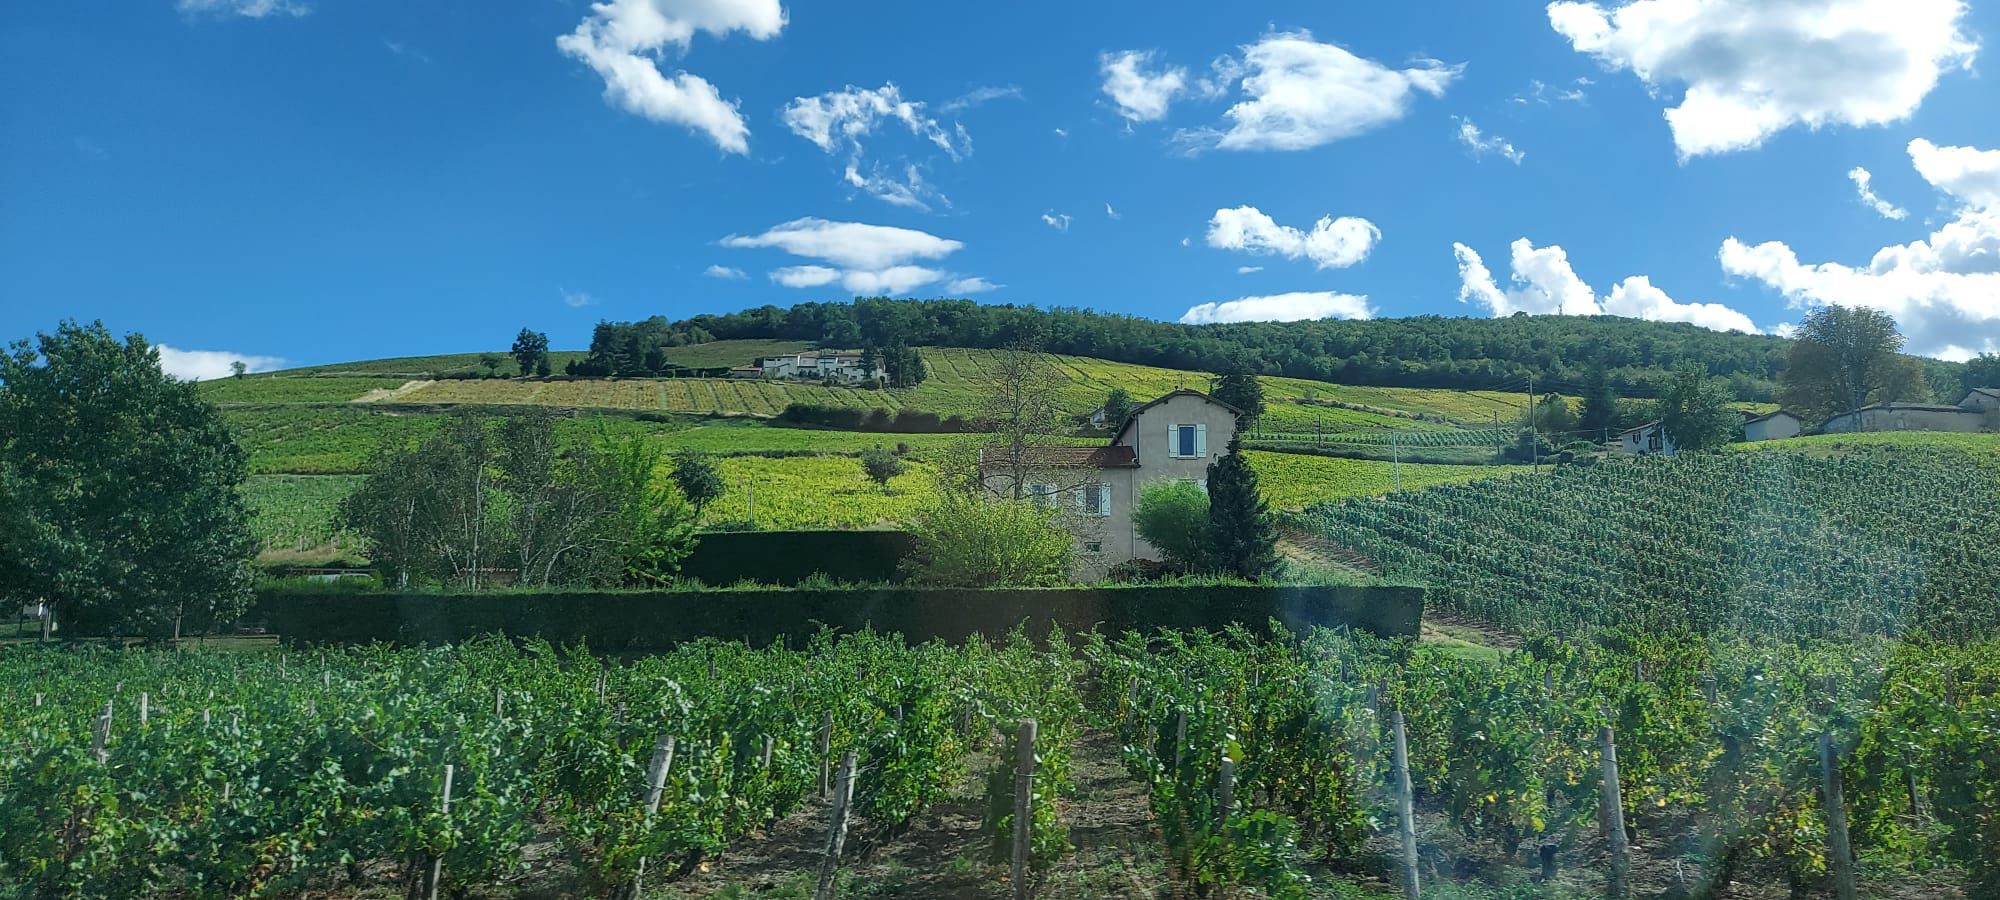 Laura Magagna visitant les vignobles de la region de Lyon